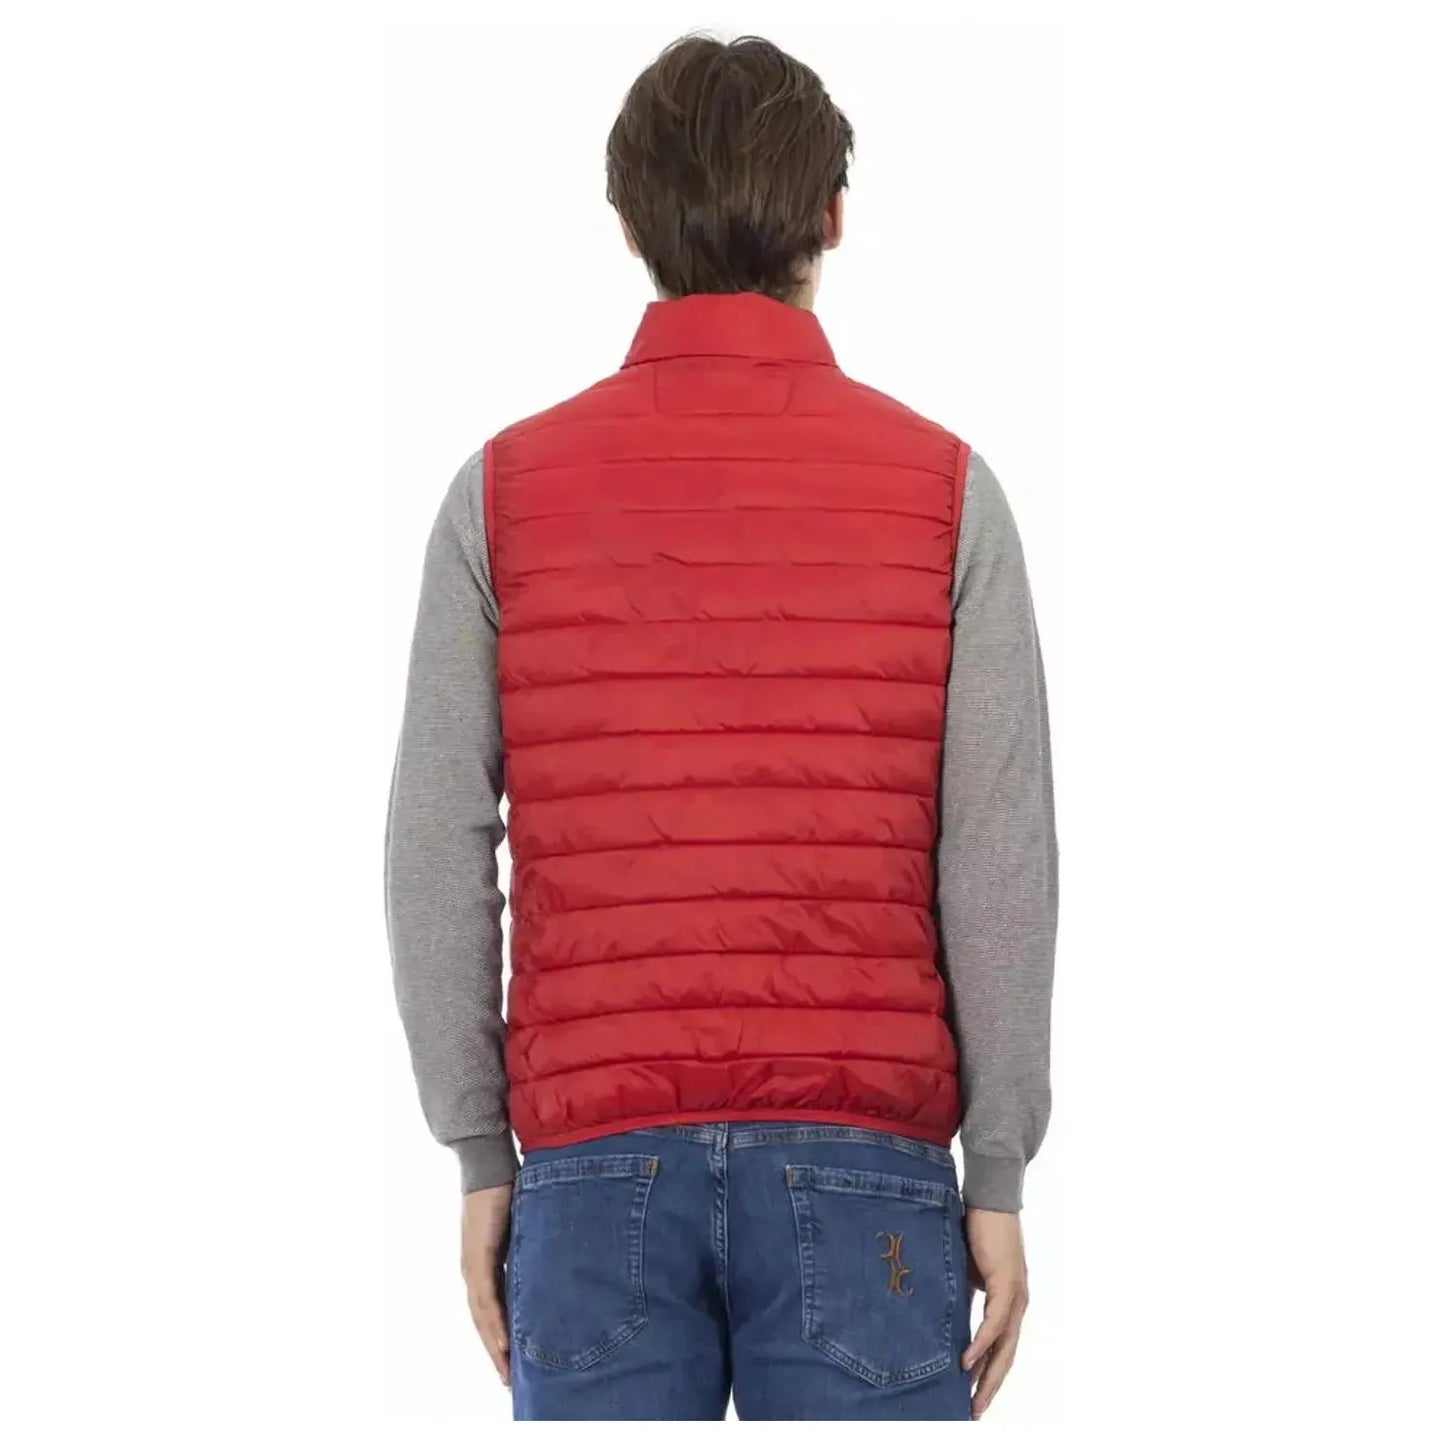 Ciesse Outdoor Sleeveless Red Down Jacket - Sleek & Functional red-jacket-4